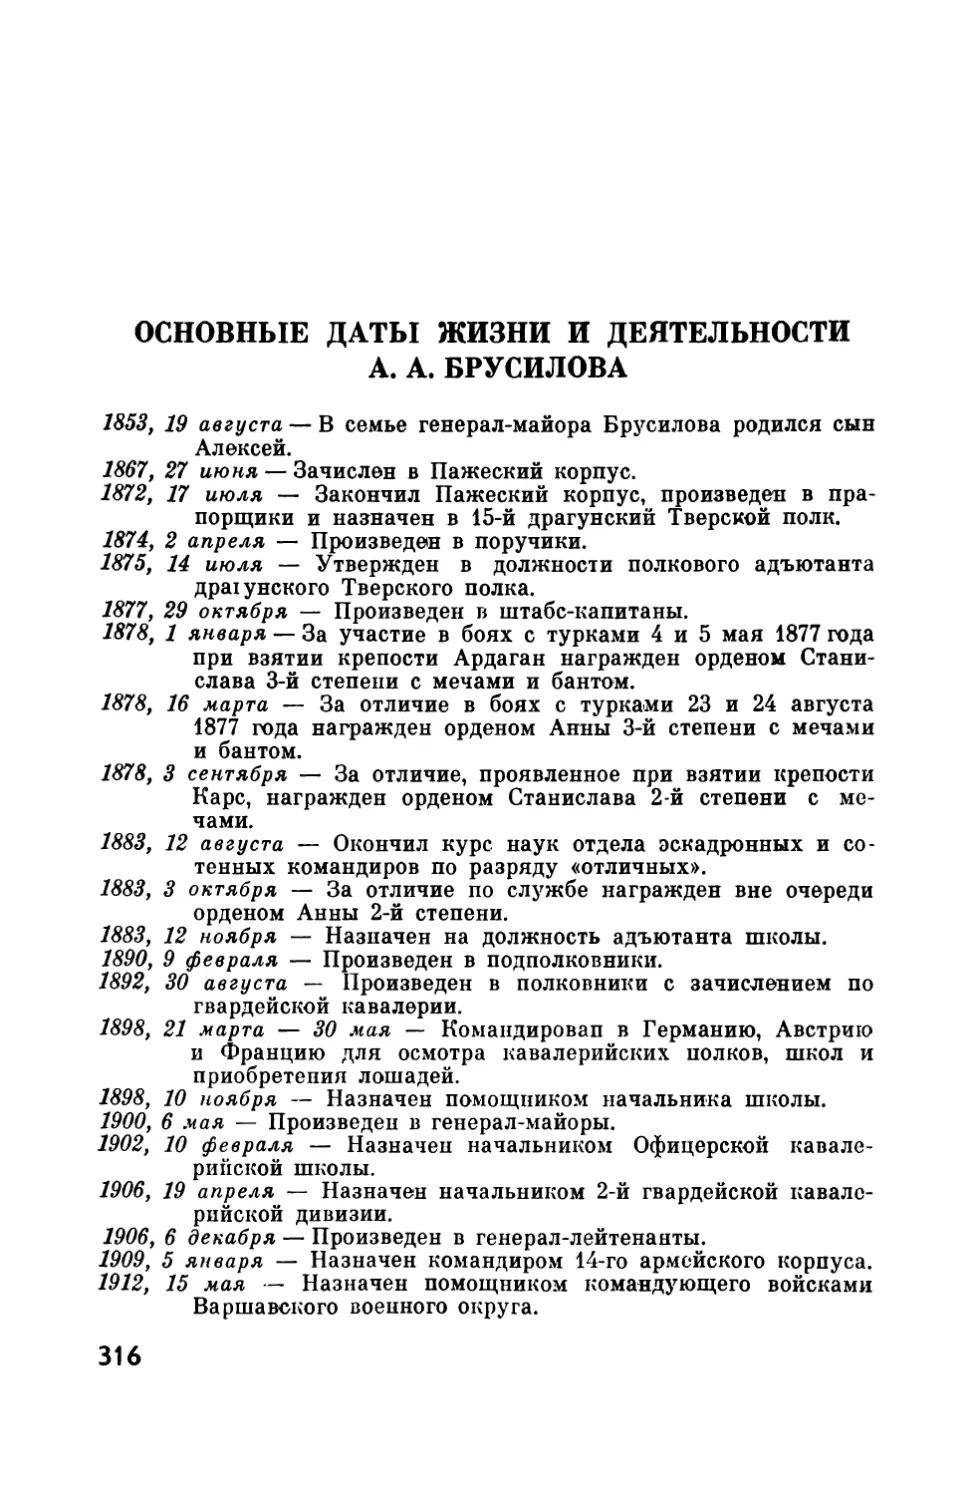 Основные даты жизни и деятельности А. А. Брусилова